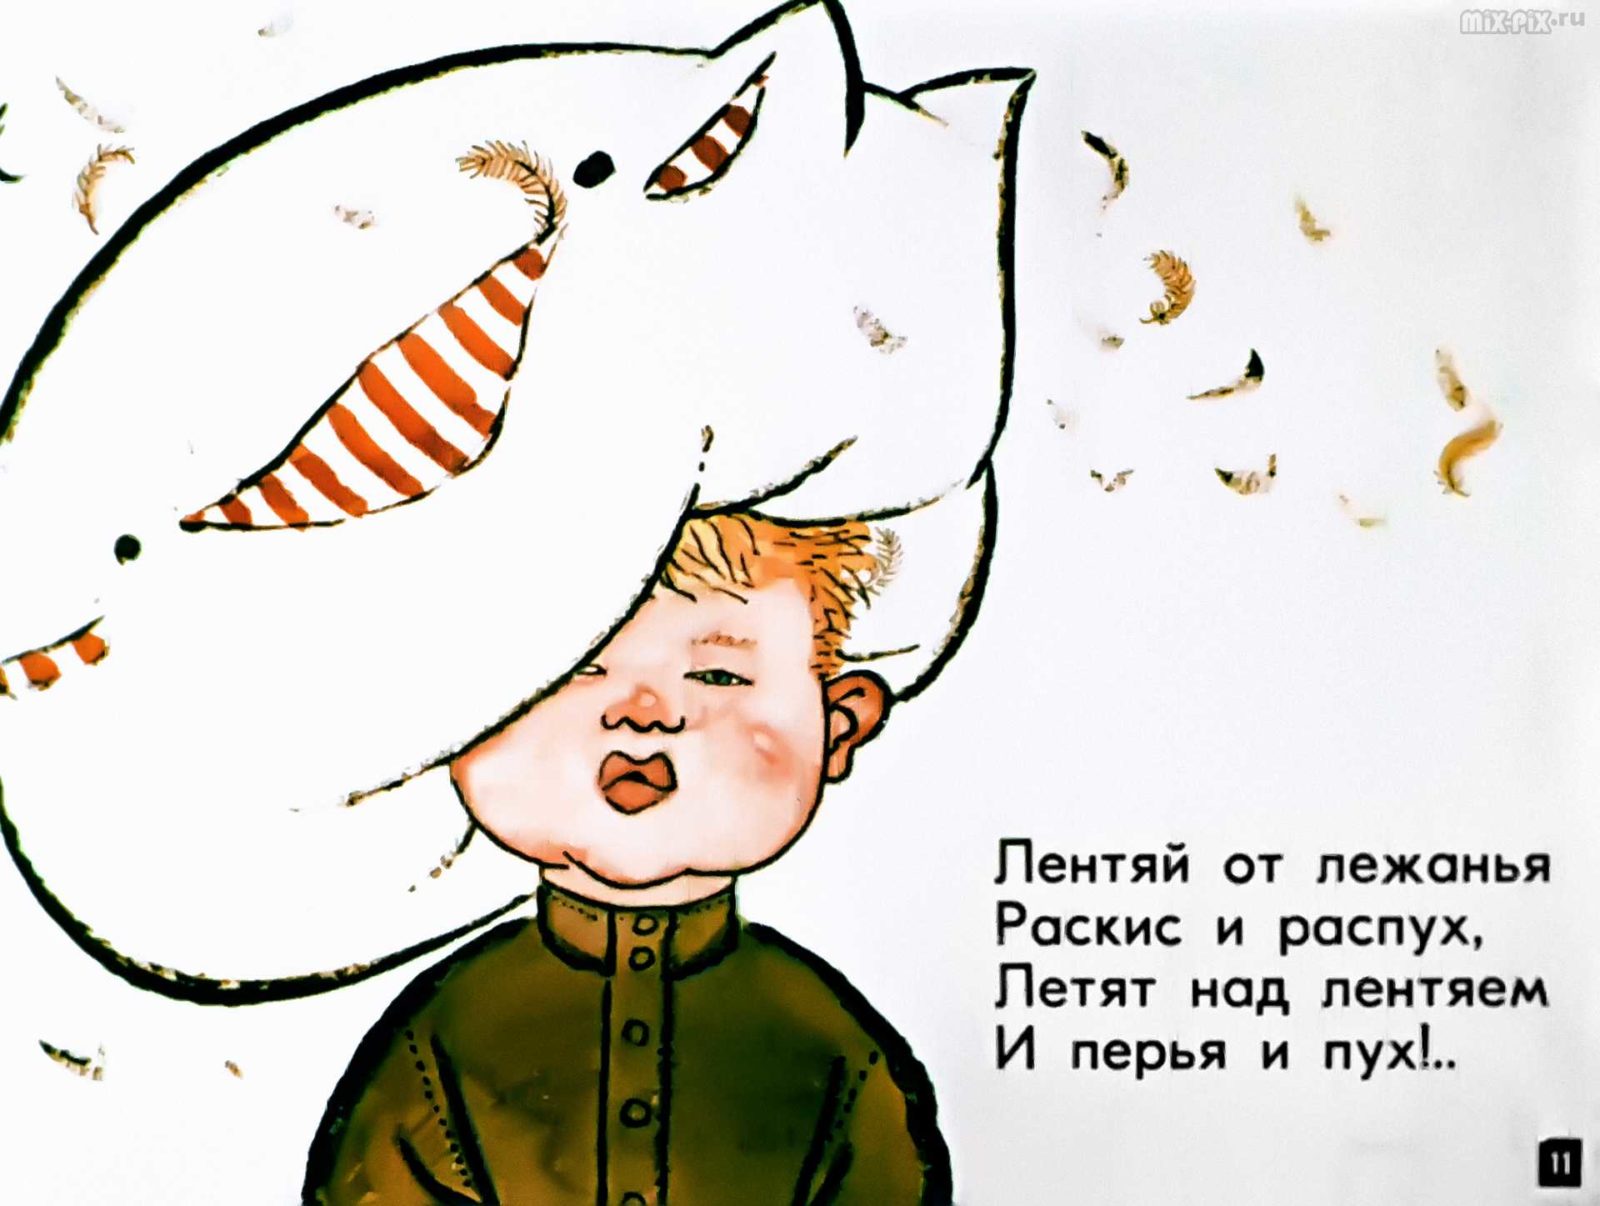 Диафильм - Лентяй с подушкой (1966)